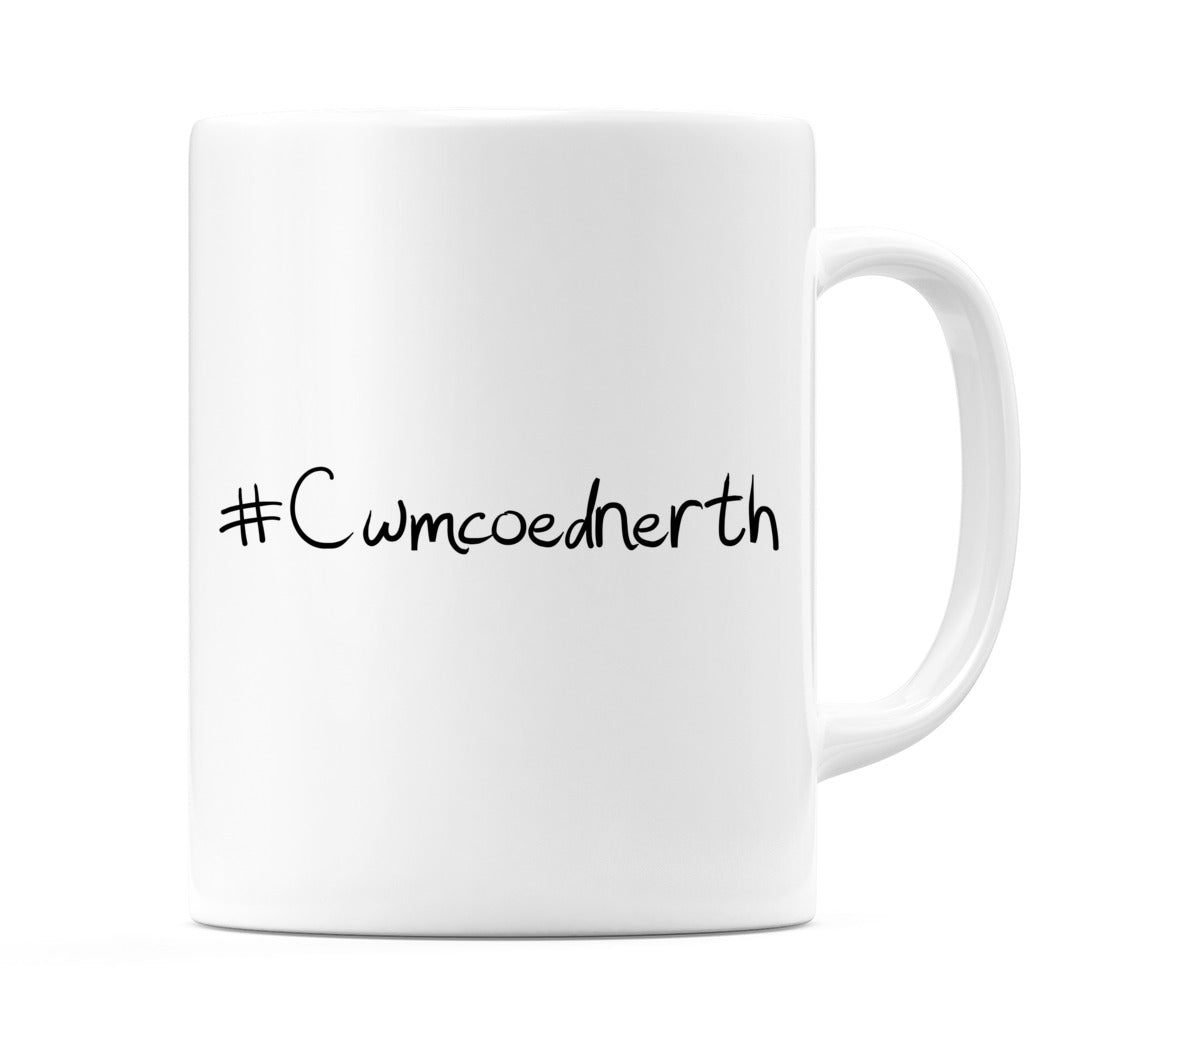 #Cwmcoednerth Mug